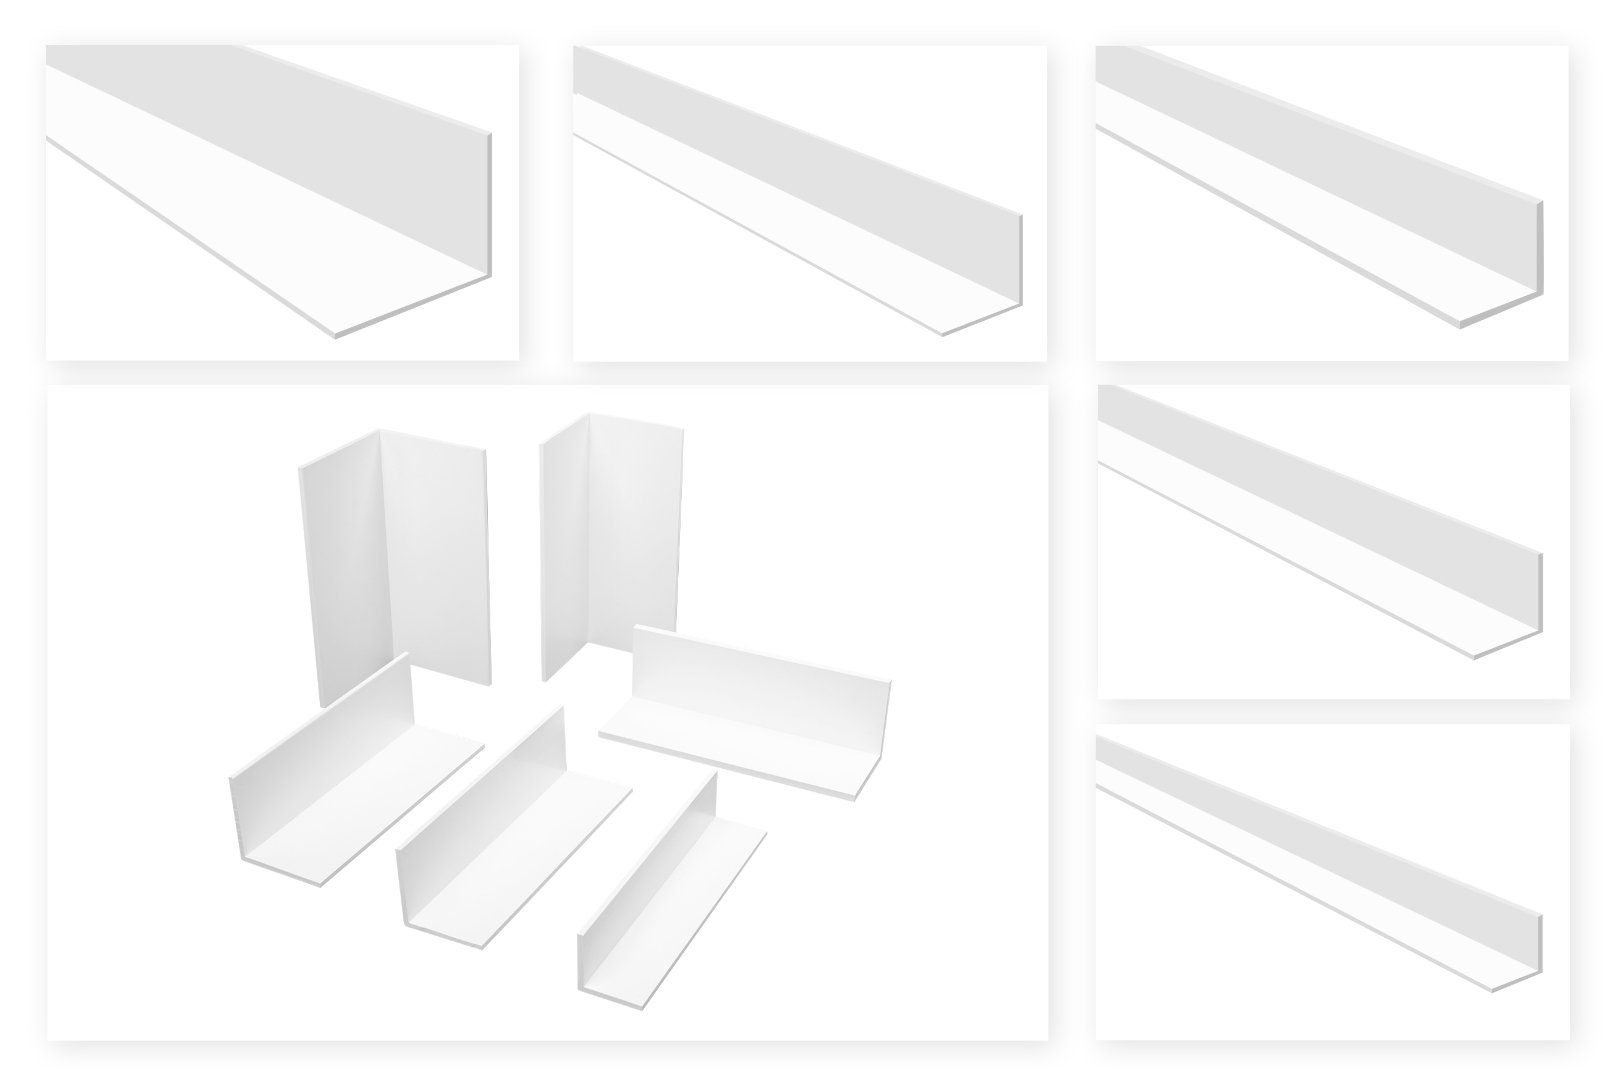 Hexim Winkelprofil Winkelleiste 327 - gleichschenklig (Winkelprofile gleichschenklig weiß - PVC Kunststoffwinkel, Auswahl Maße & Stärke (20x20mm) Fenster Abdeckleisten L-Profil Eckleiste)